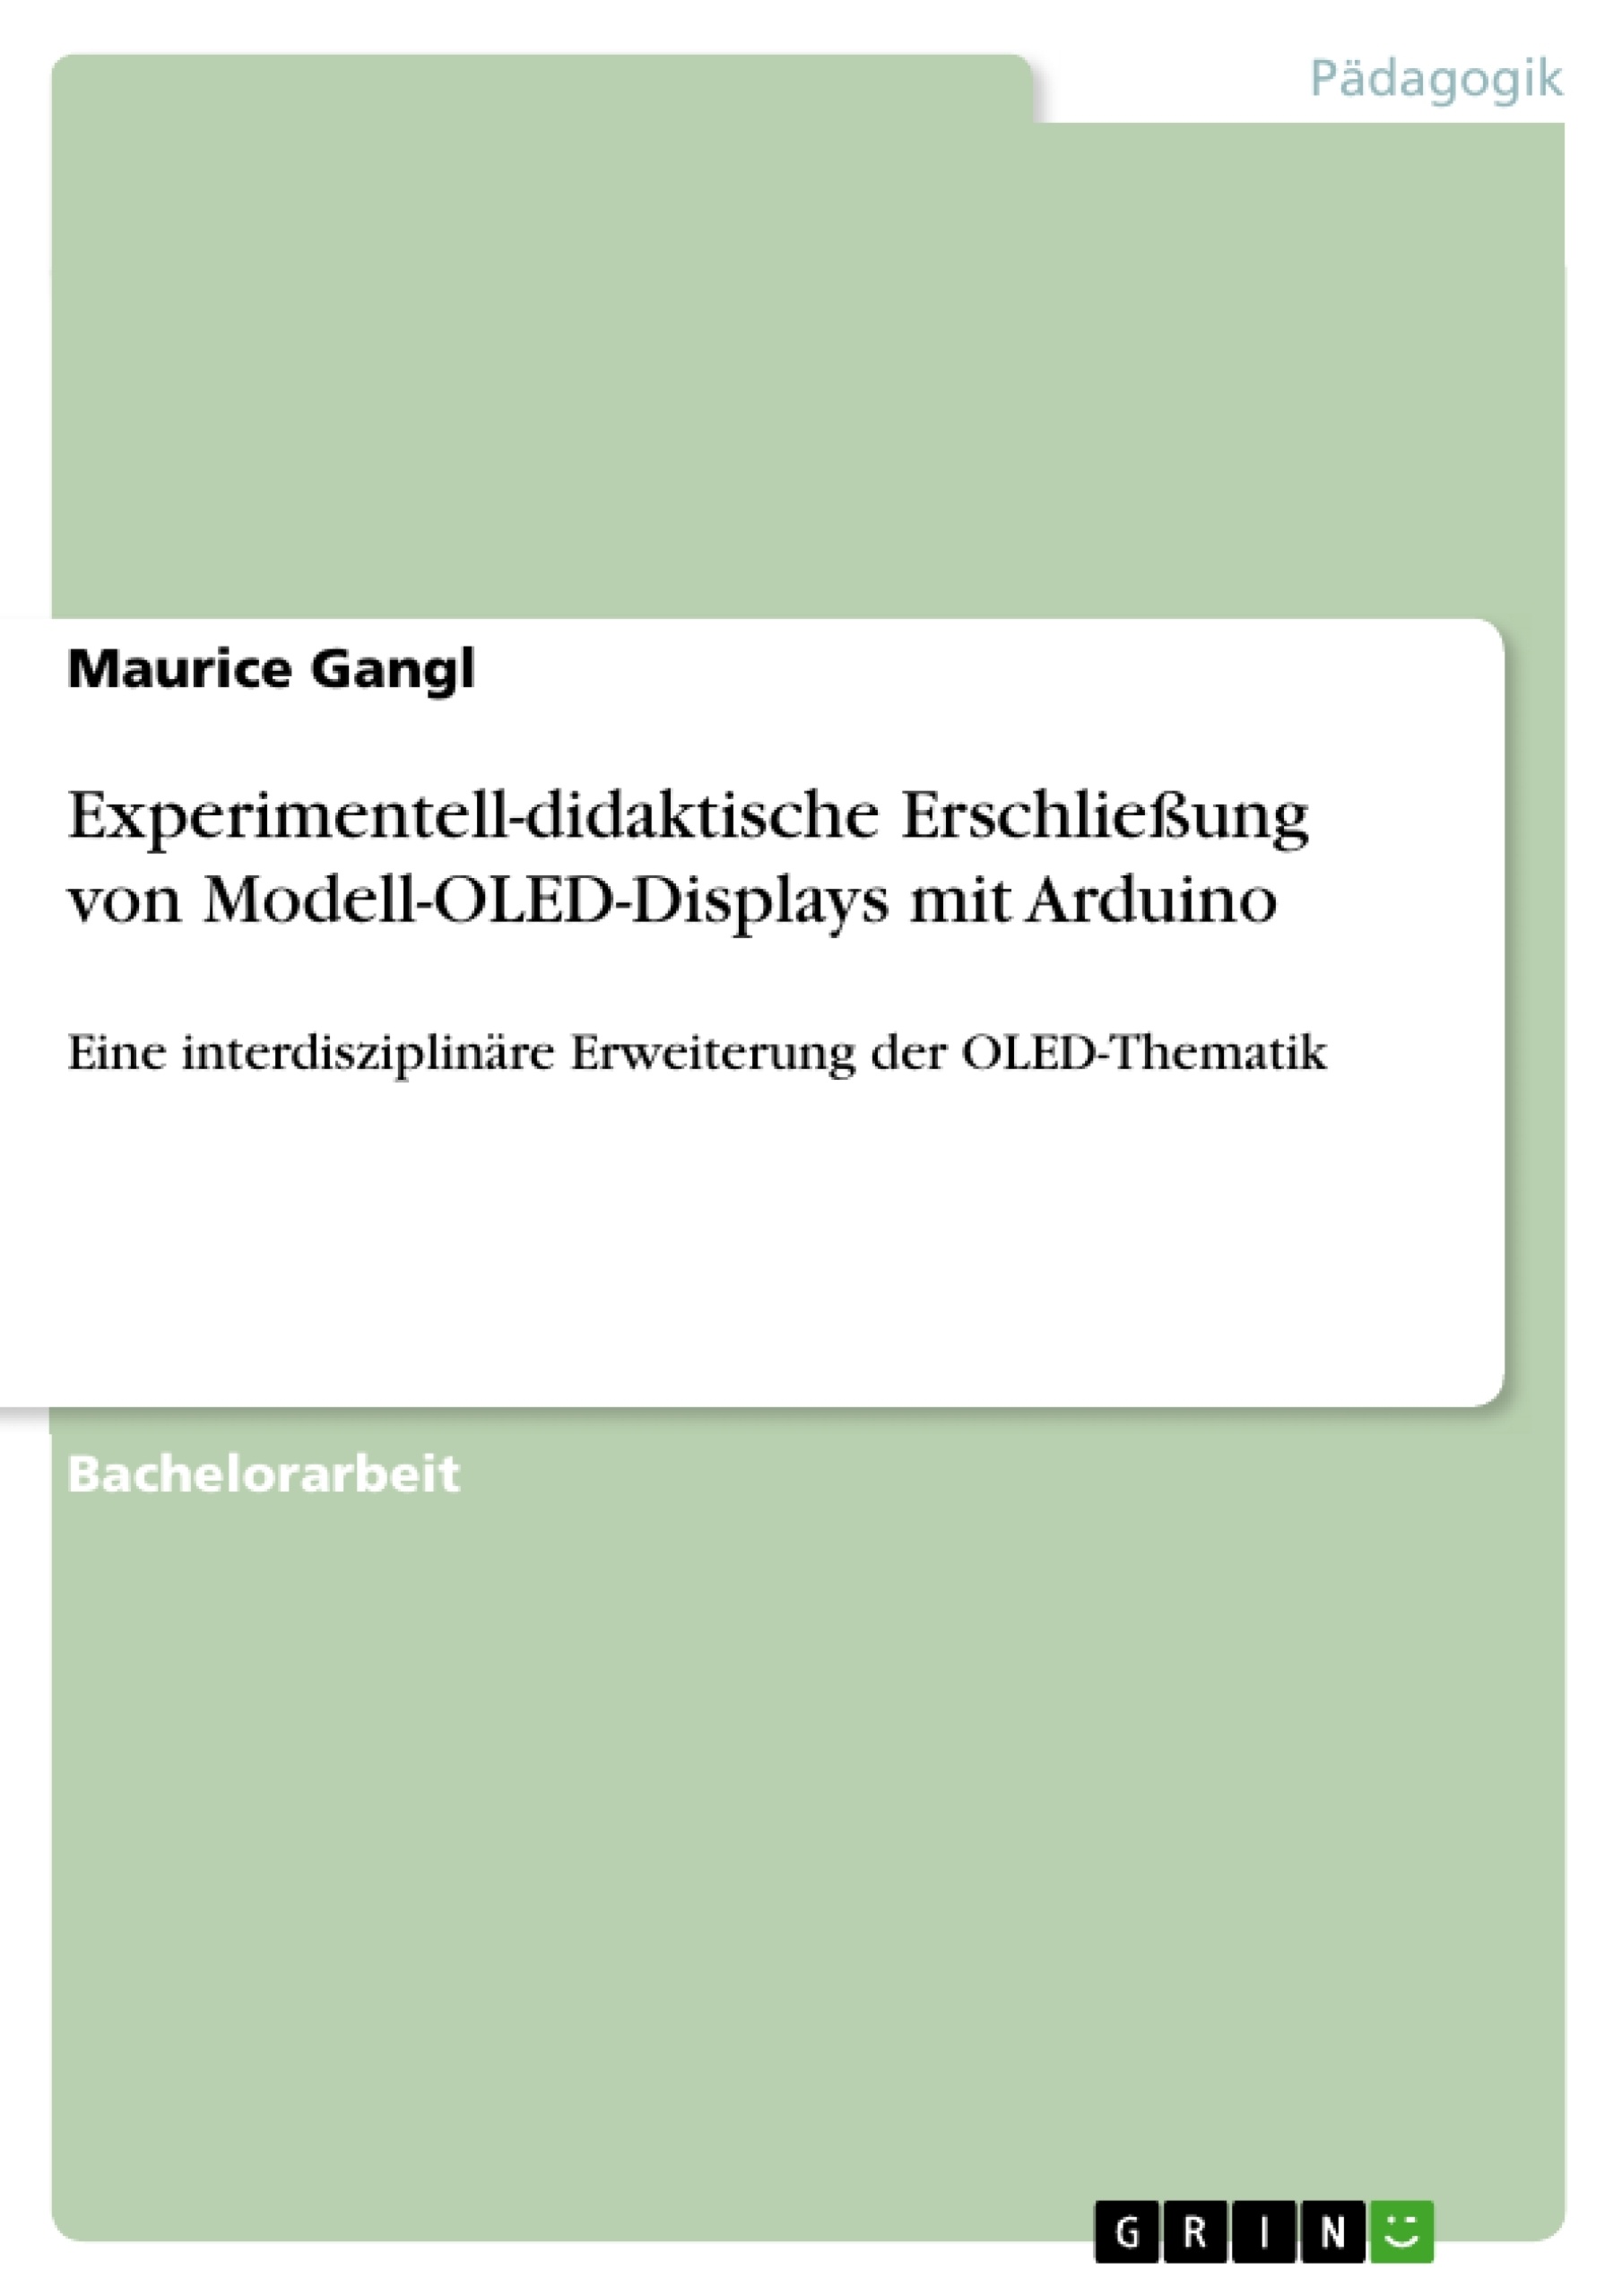 Title: Experimentell-didaktische Erschließung von Modell-OLED-Displays mit Arduino